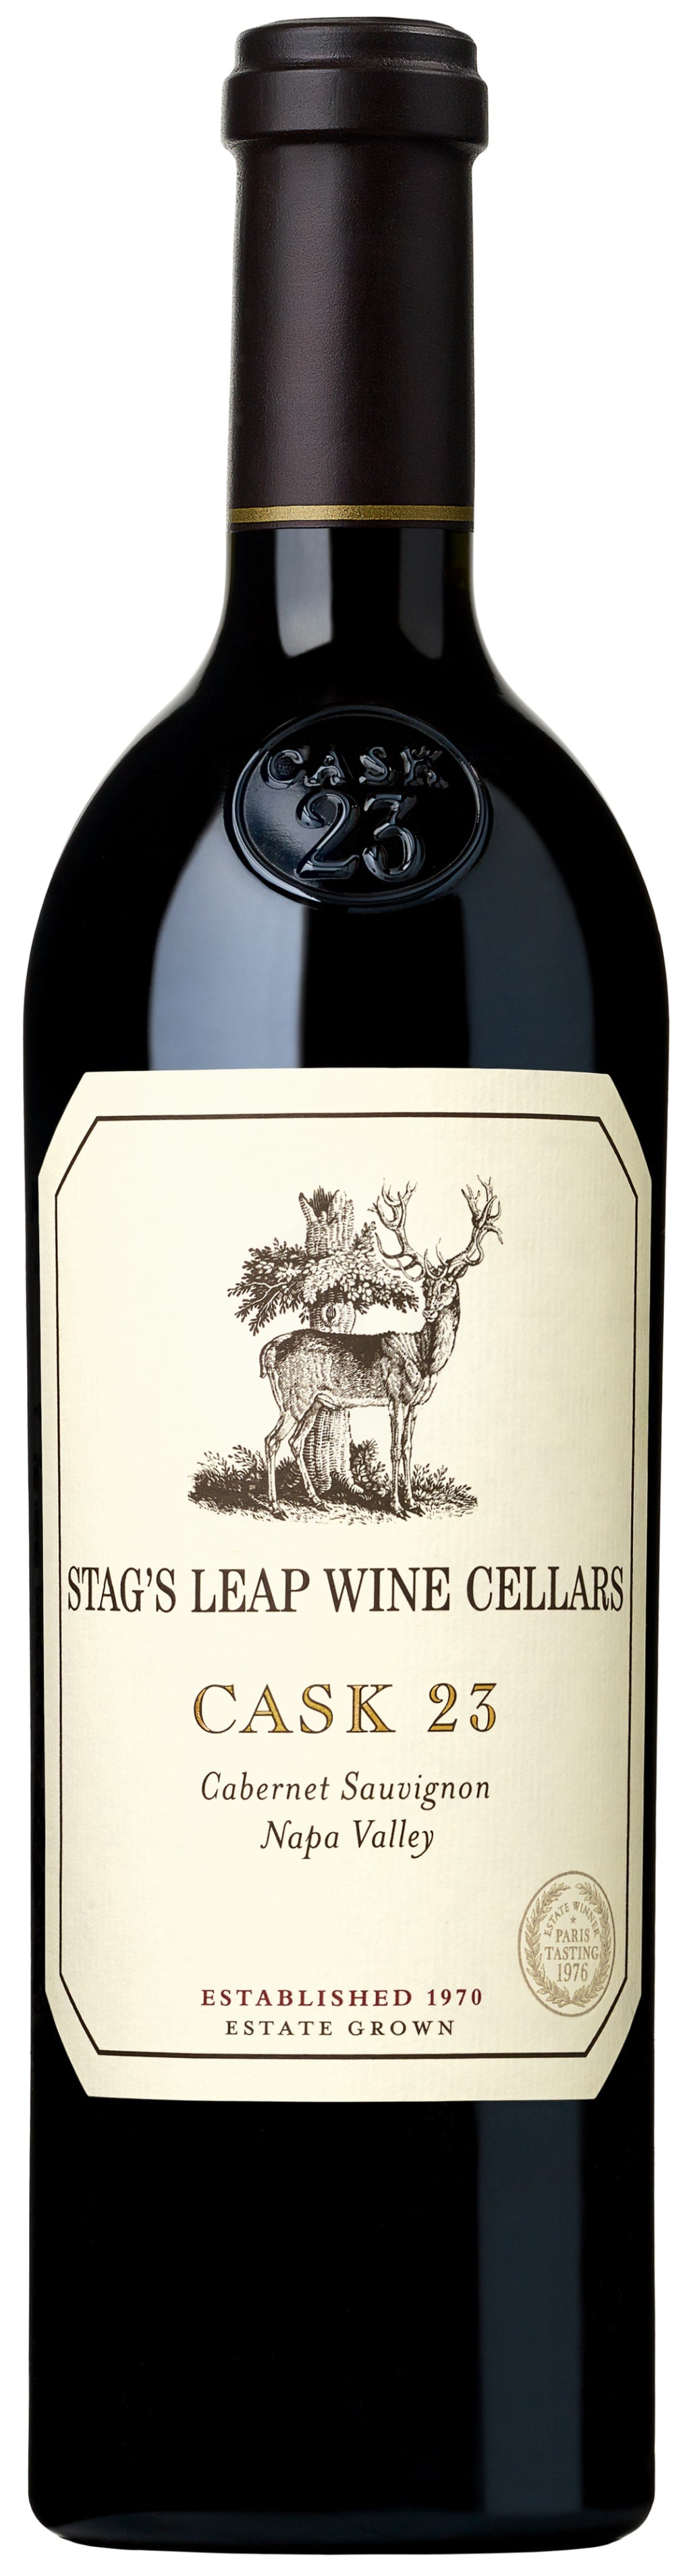 Stag's Leap Wine Cellars Cabernet Sauvignon Cask 23 2017